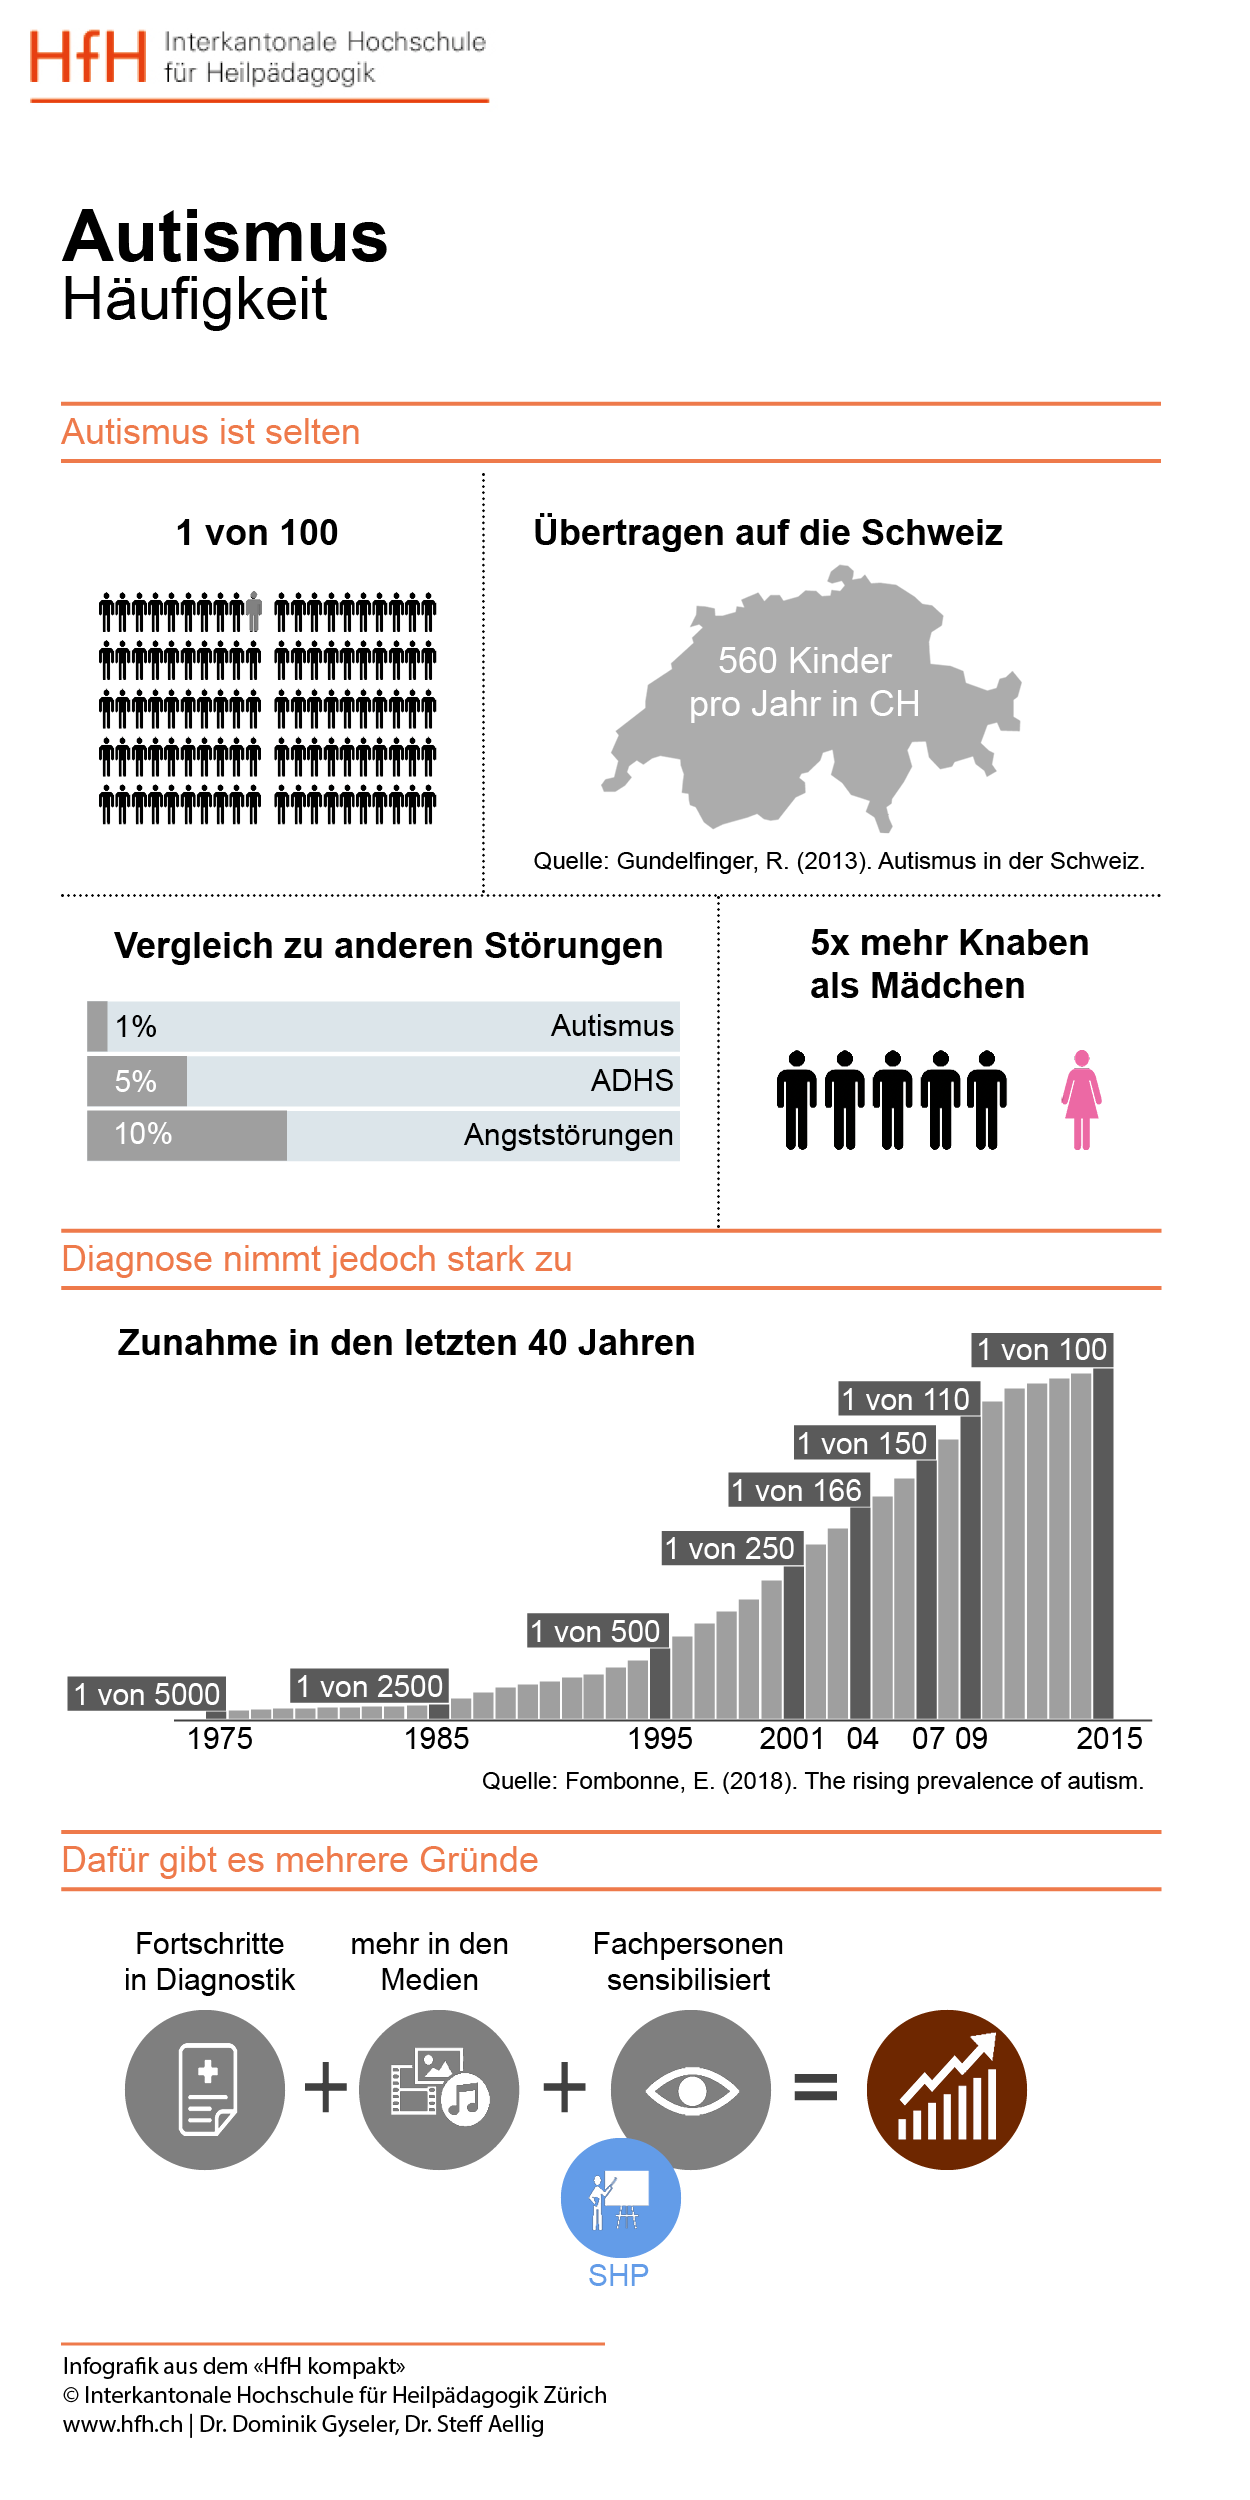 Grafik zeigt, dass Autismus selten ist. Er wird bei einer von hundert Personen diagnostiziert. Für die Schweiz heisst dies 560 Kinder pro Jahr. Die Knaben sind fünf Mal mehr betroffen. Die Diagnose nimmt in den letzten 40 Jahren zu. Das liegt an den Fortschritten in der Diagnostik, an der Medienpräsenz und den sensibilisierten Fachpersonen.